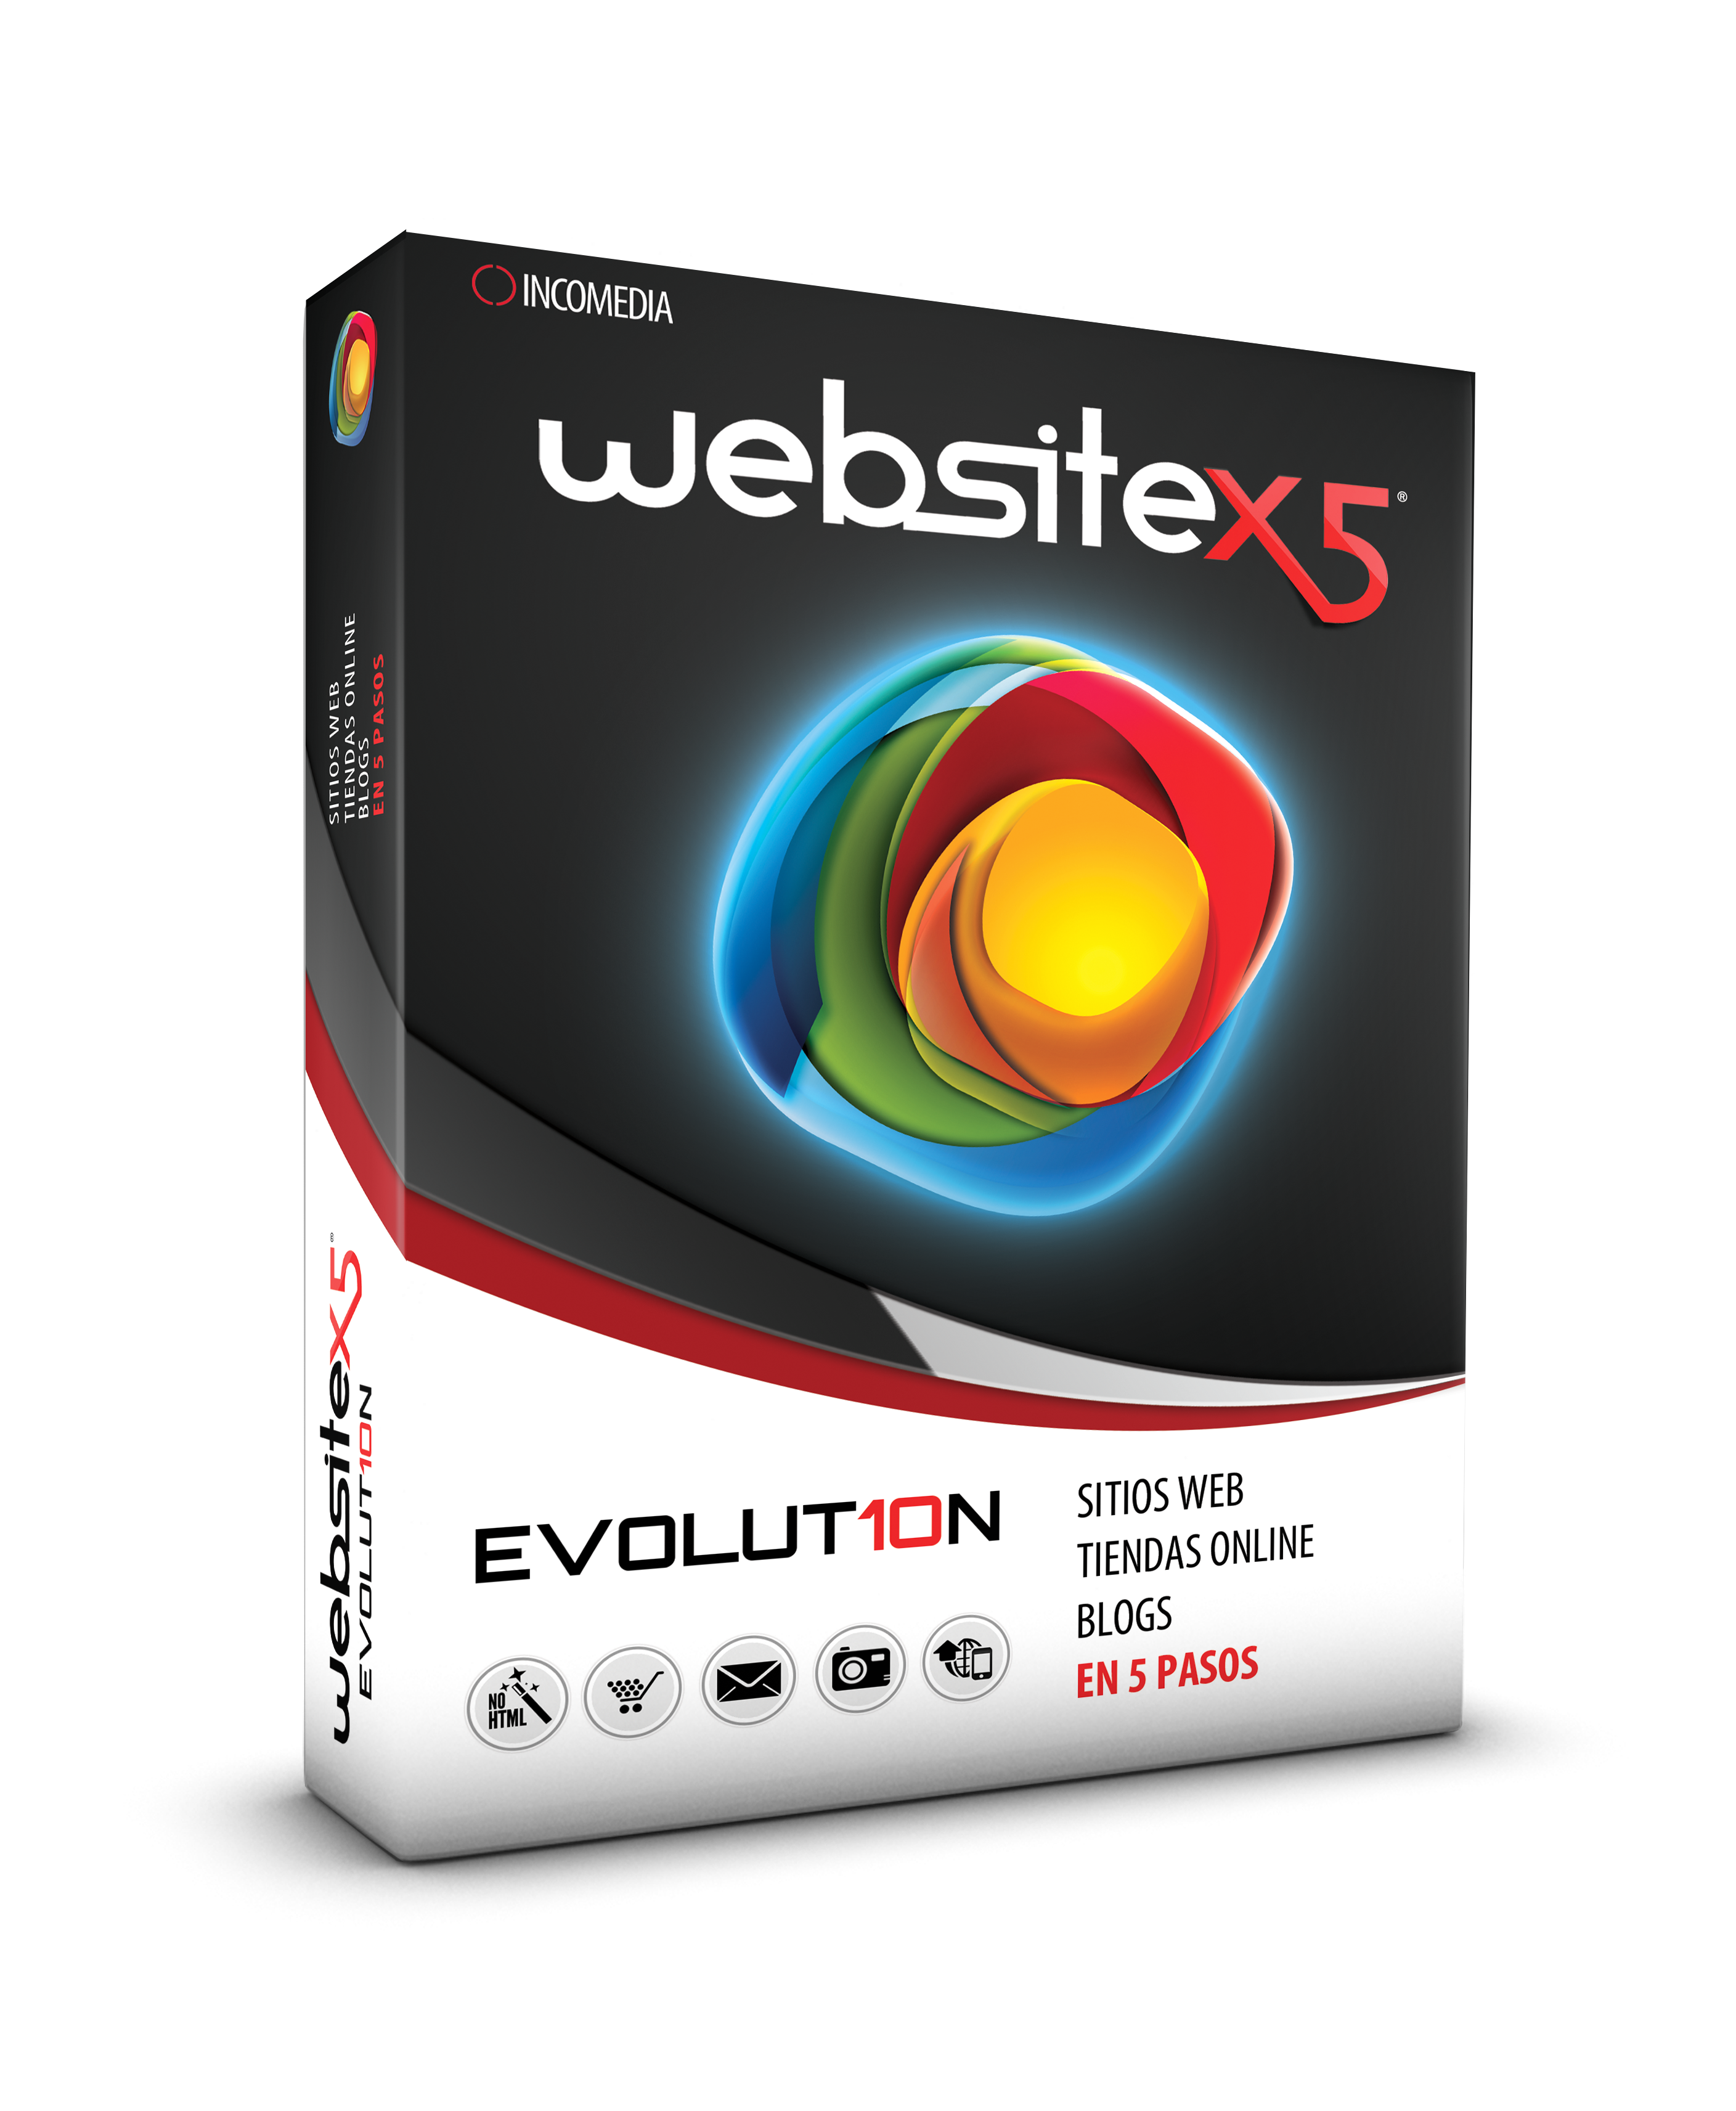 Alojamiento web gratuito gracias a WebSite X5® Evolution 10